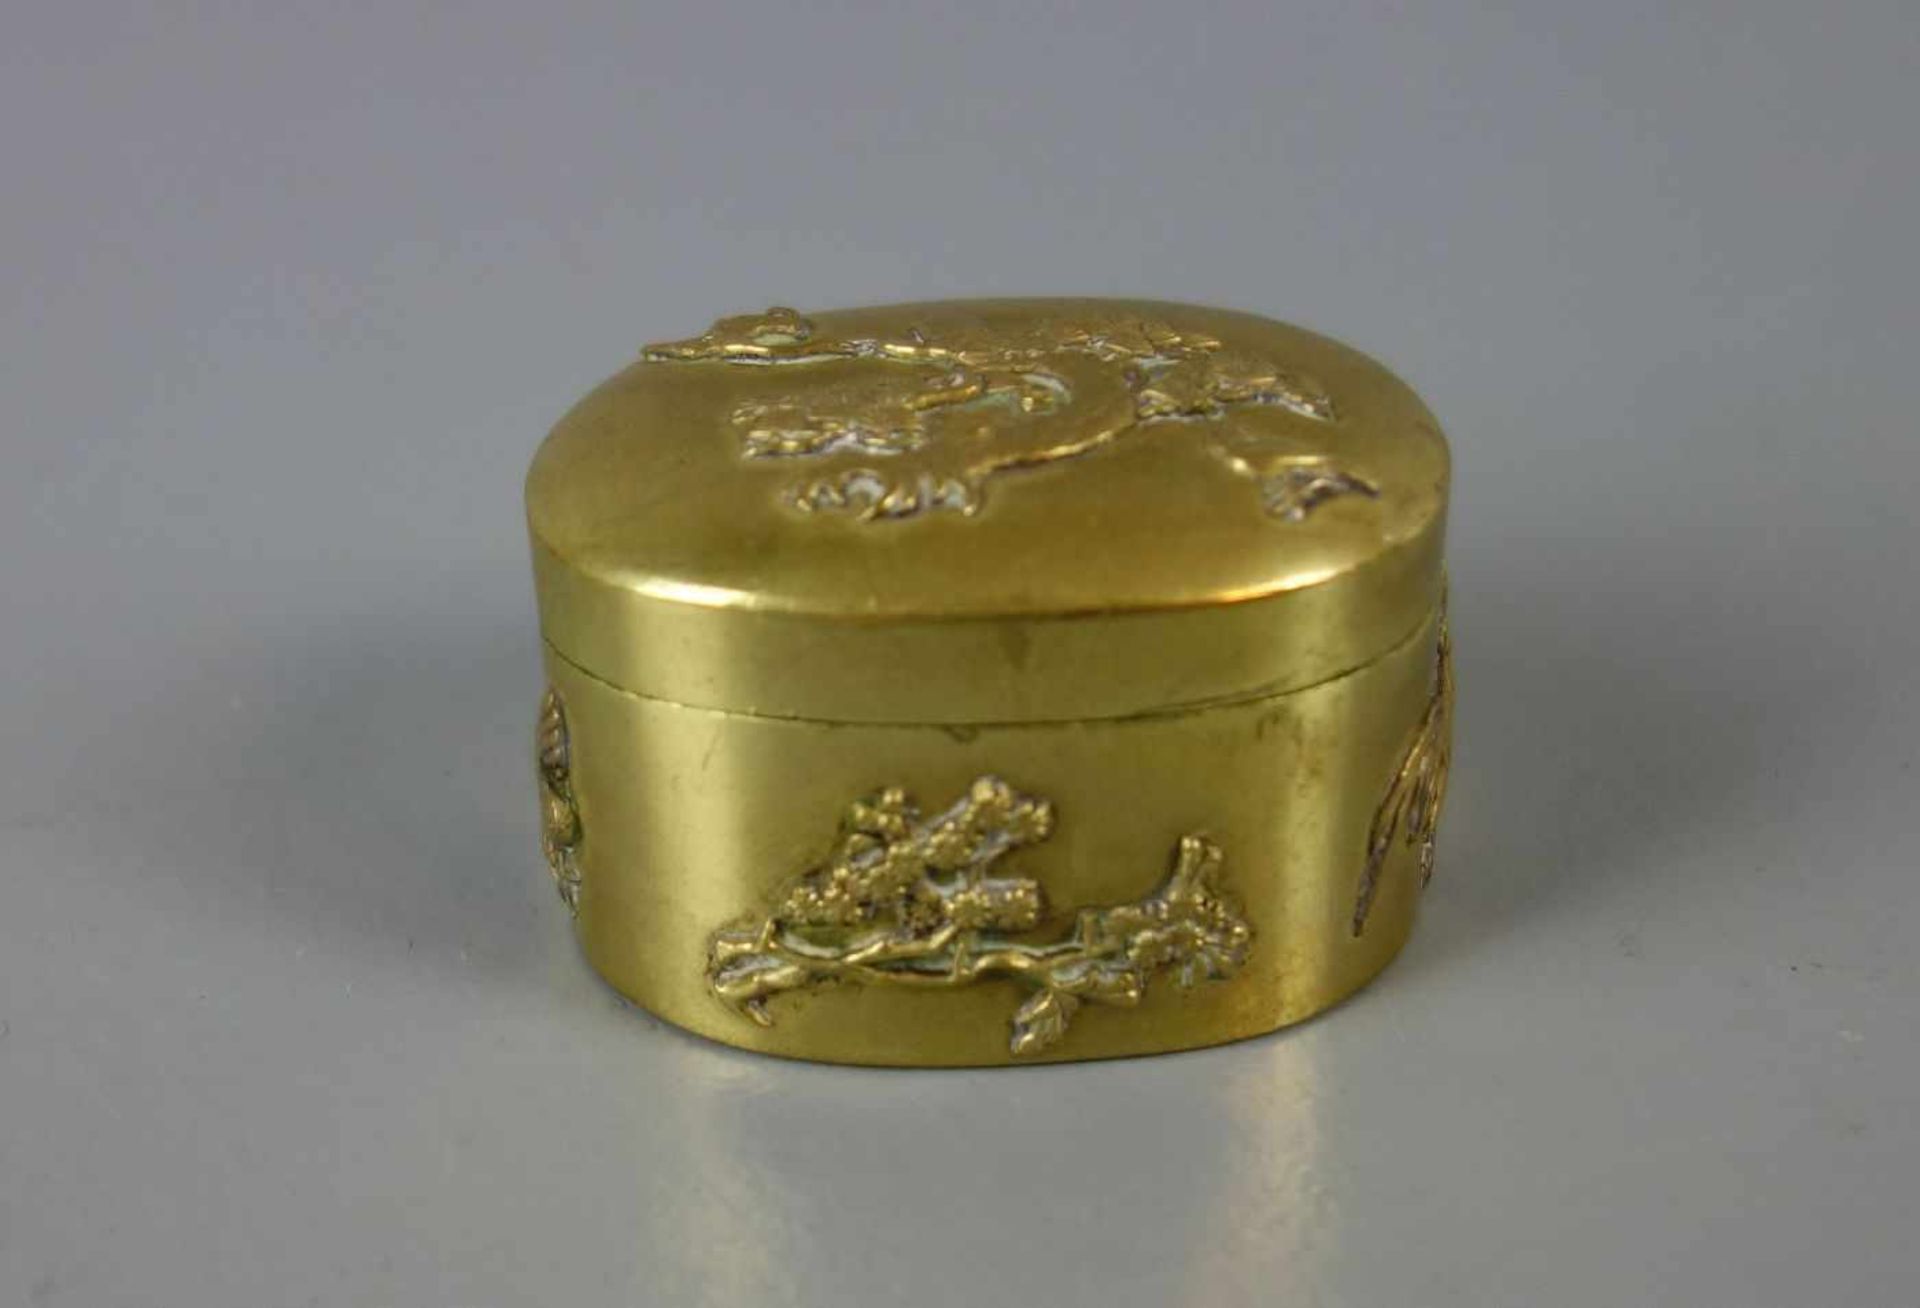 CHINESISCHE SCHATULLE / PILLENDOSE / pill box, Metall, goldfarben patiniert. Ovale Form mit leicht